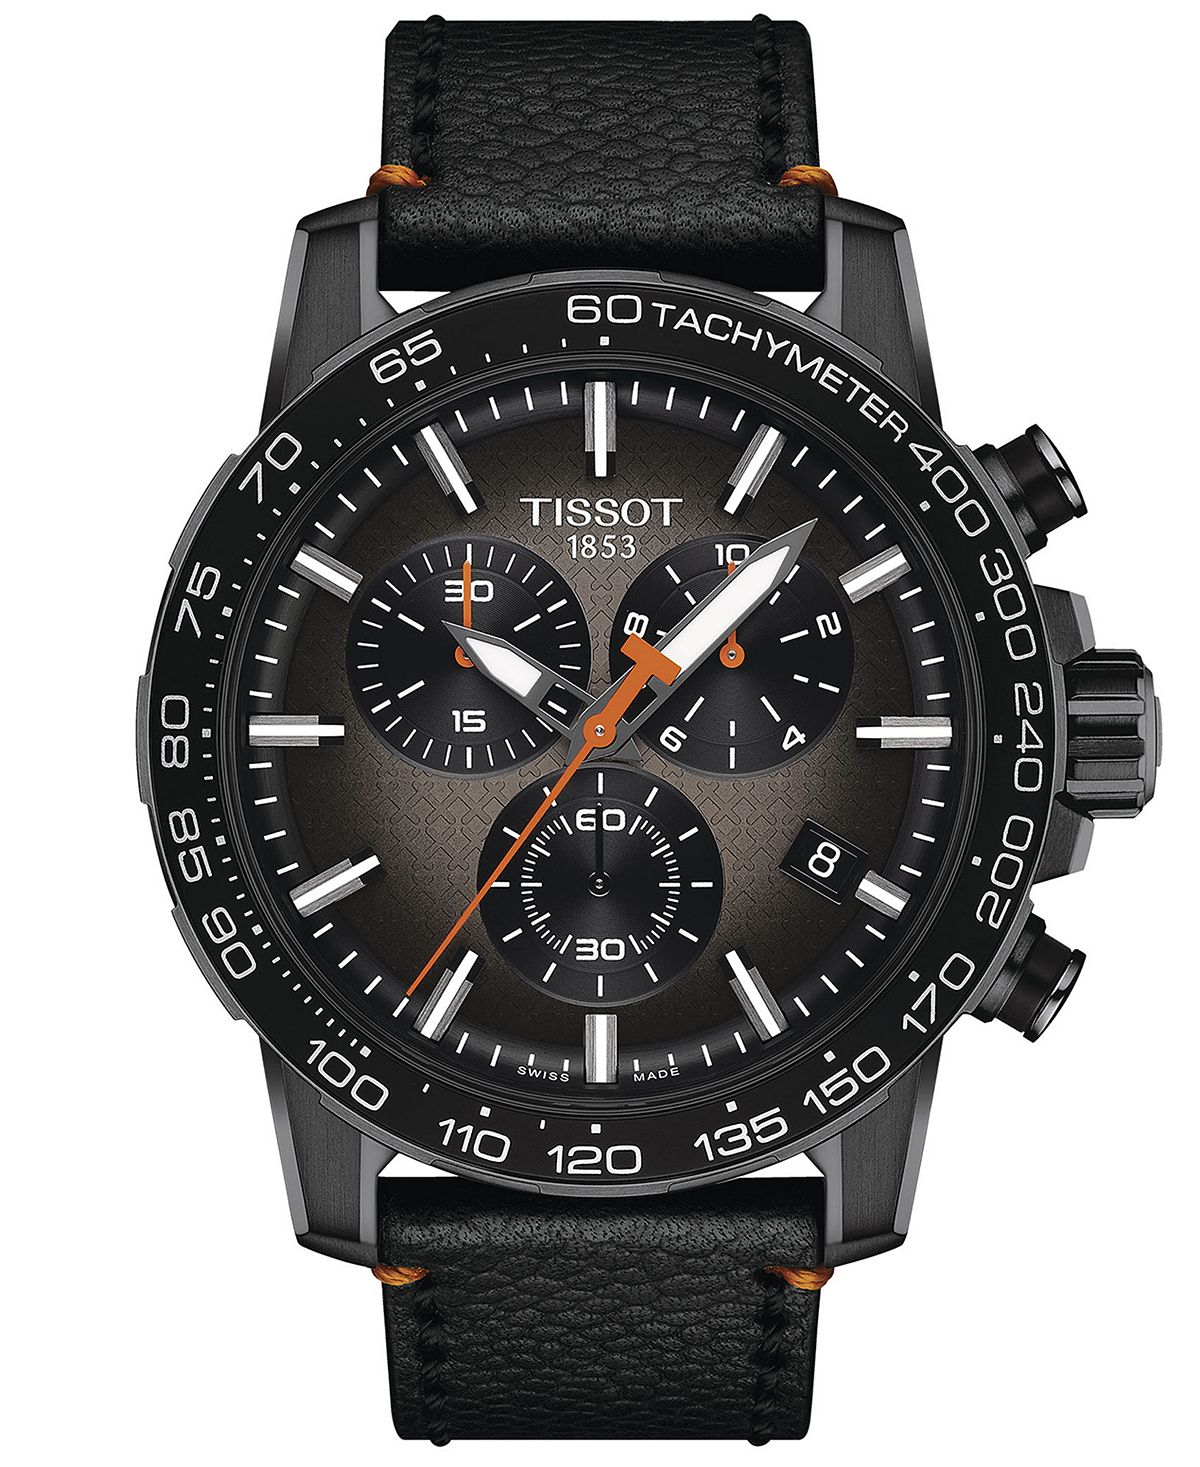 Мужские швейцарские часы с хронографом Supersport, черный кожаный ремешок, 46 мм Tissot фото